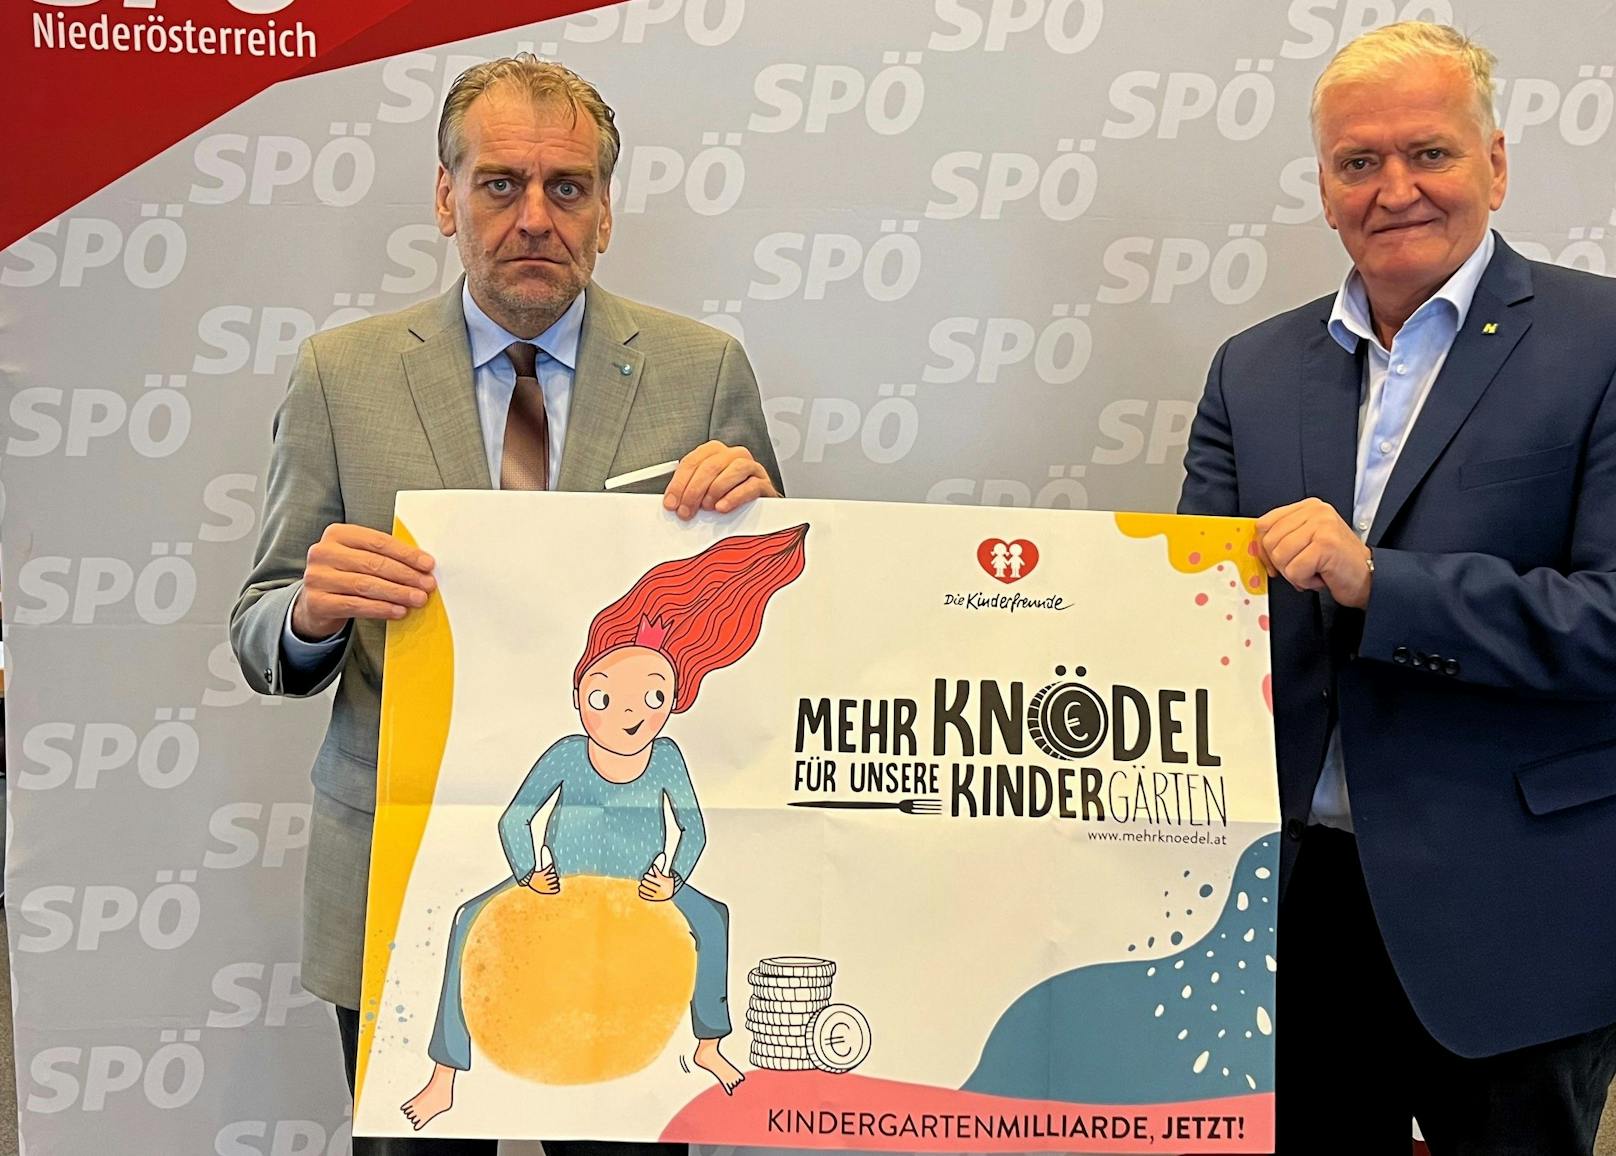 Andreas Kollross und Franz Schnabl: "Mehr Knödel für unsere Kindergärten".